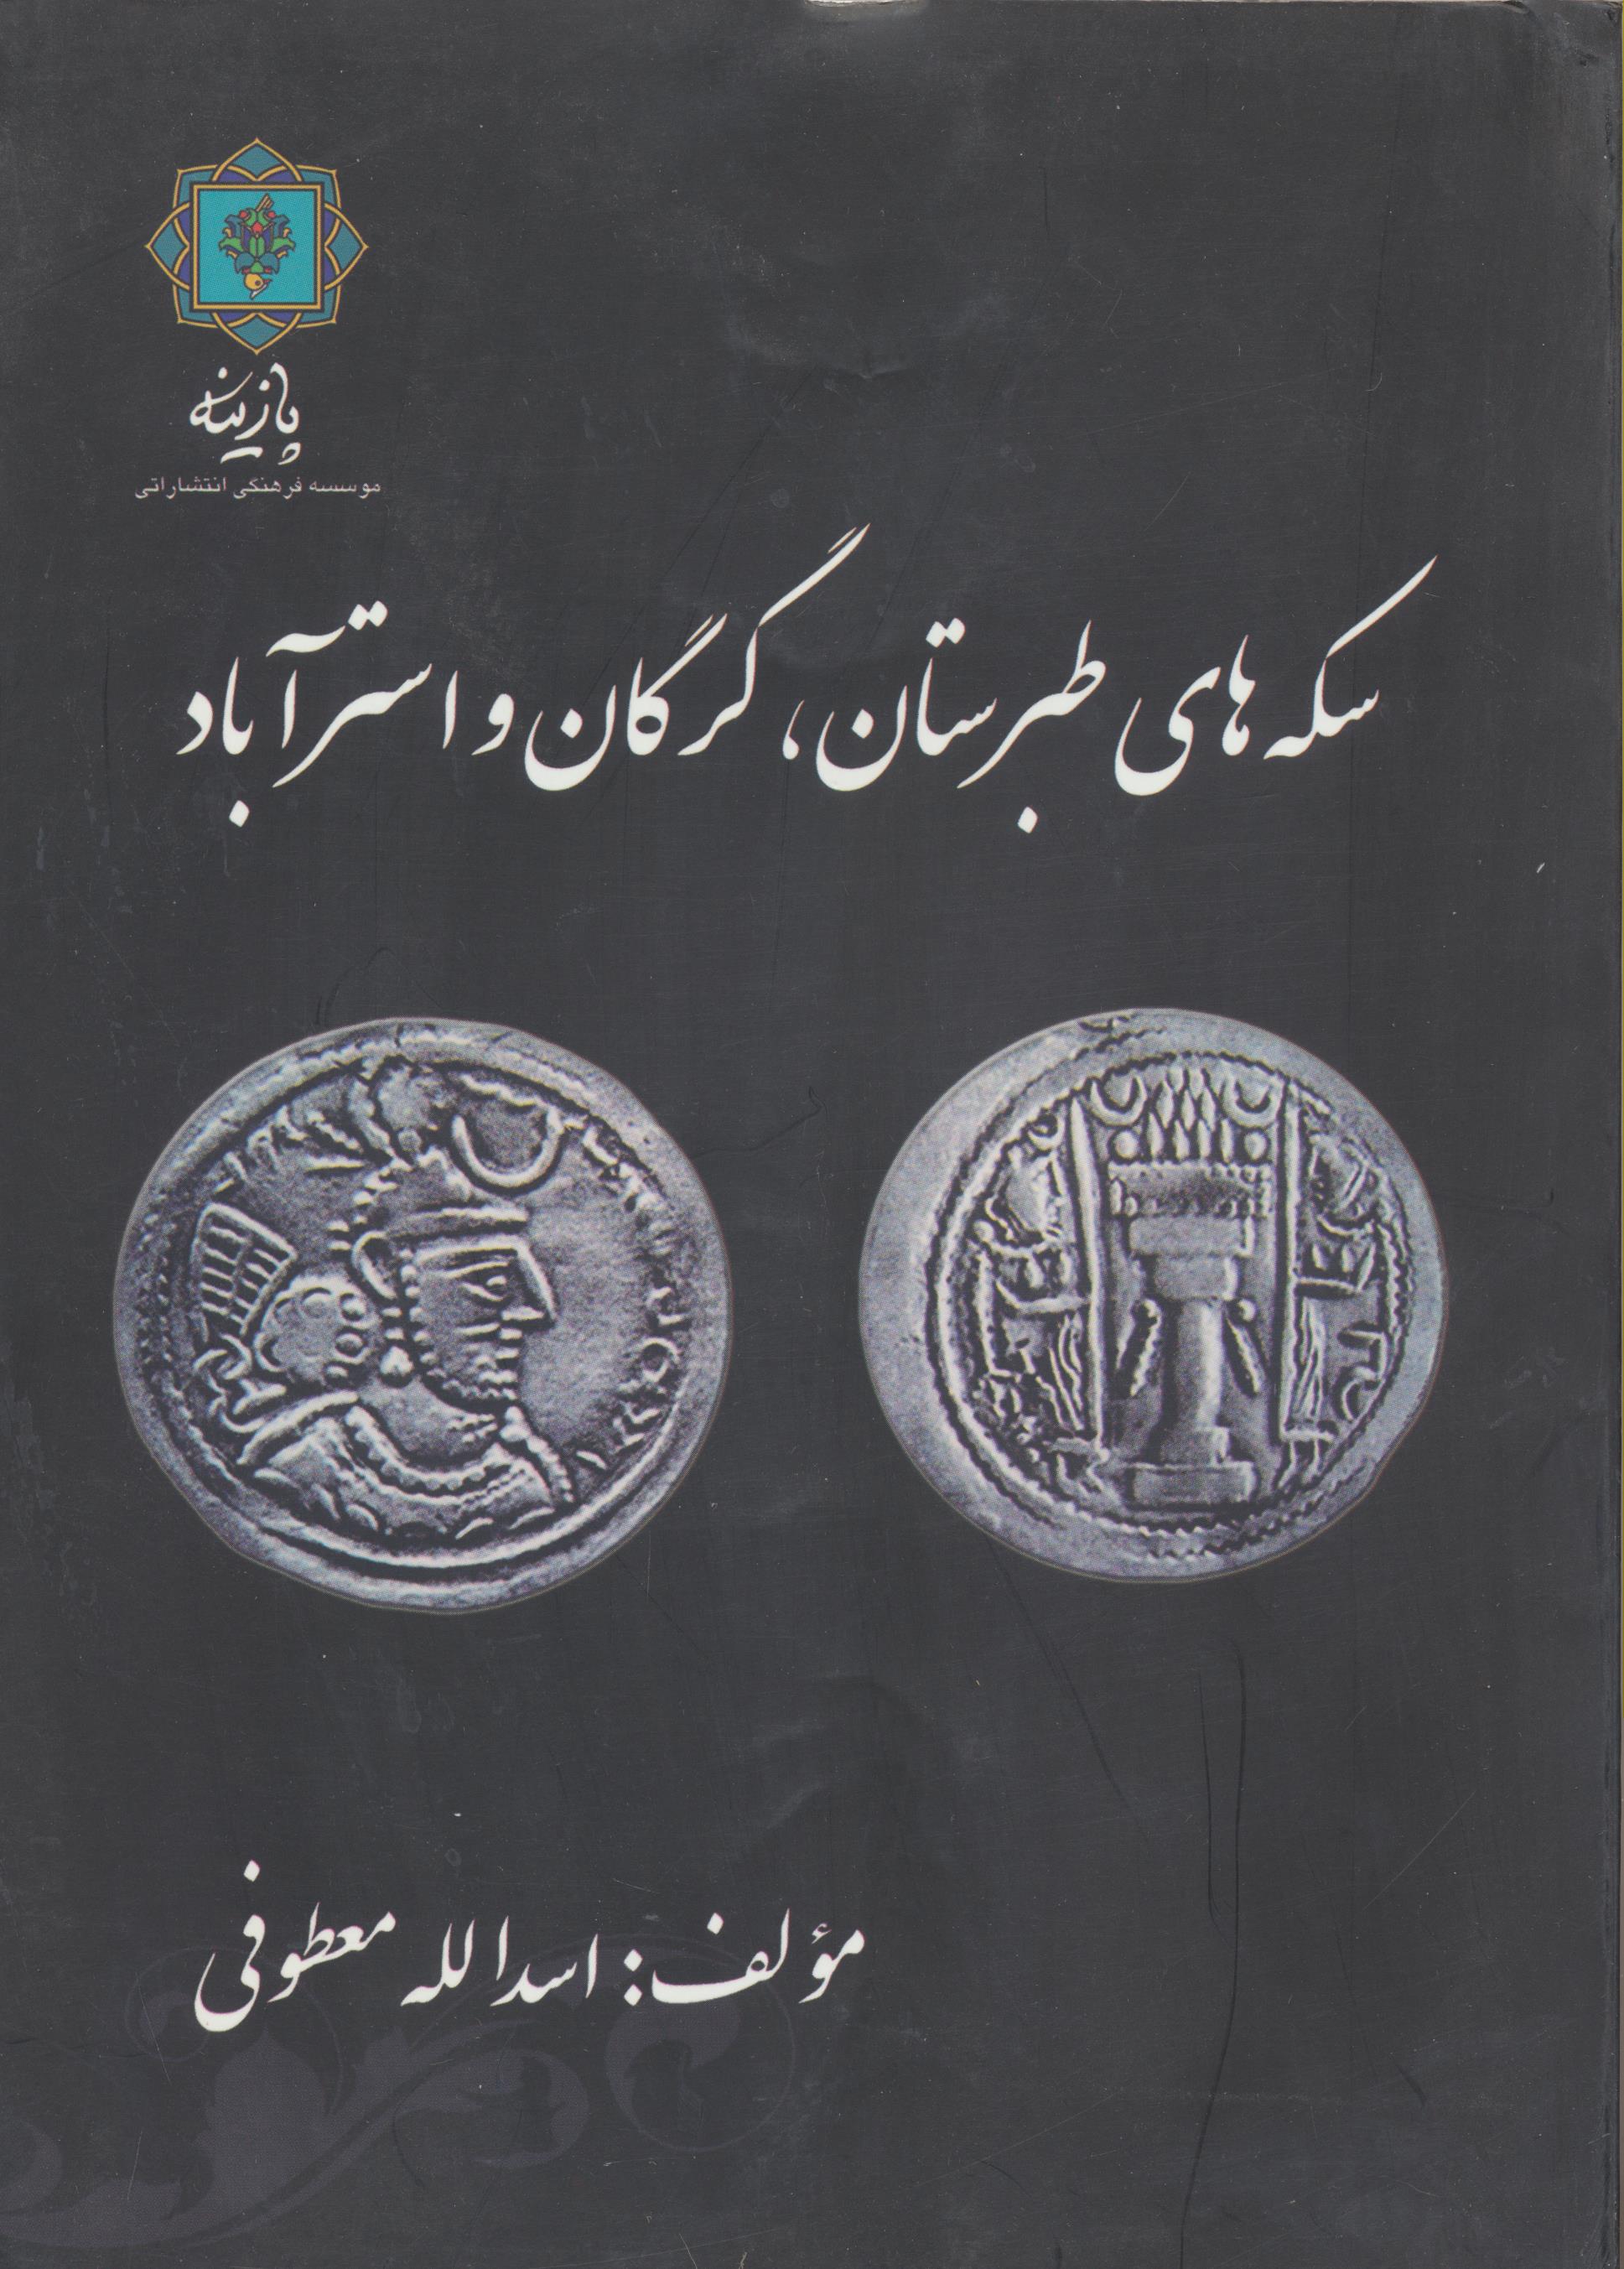 سکه های طبرستان، گرگان و استرآباد